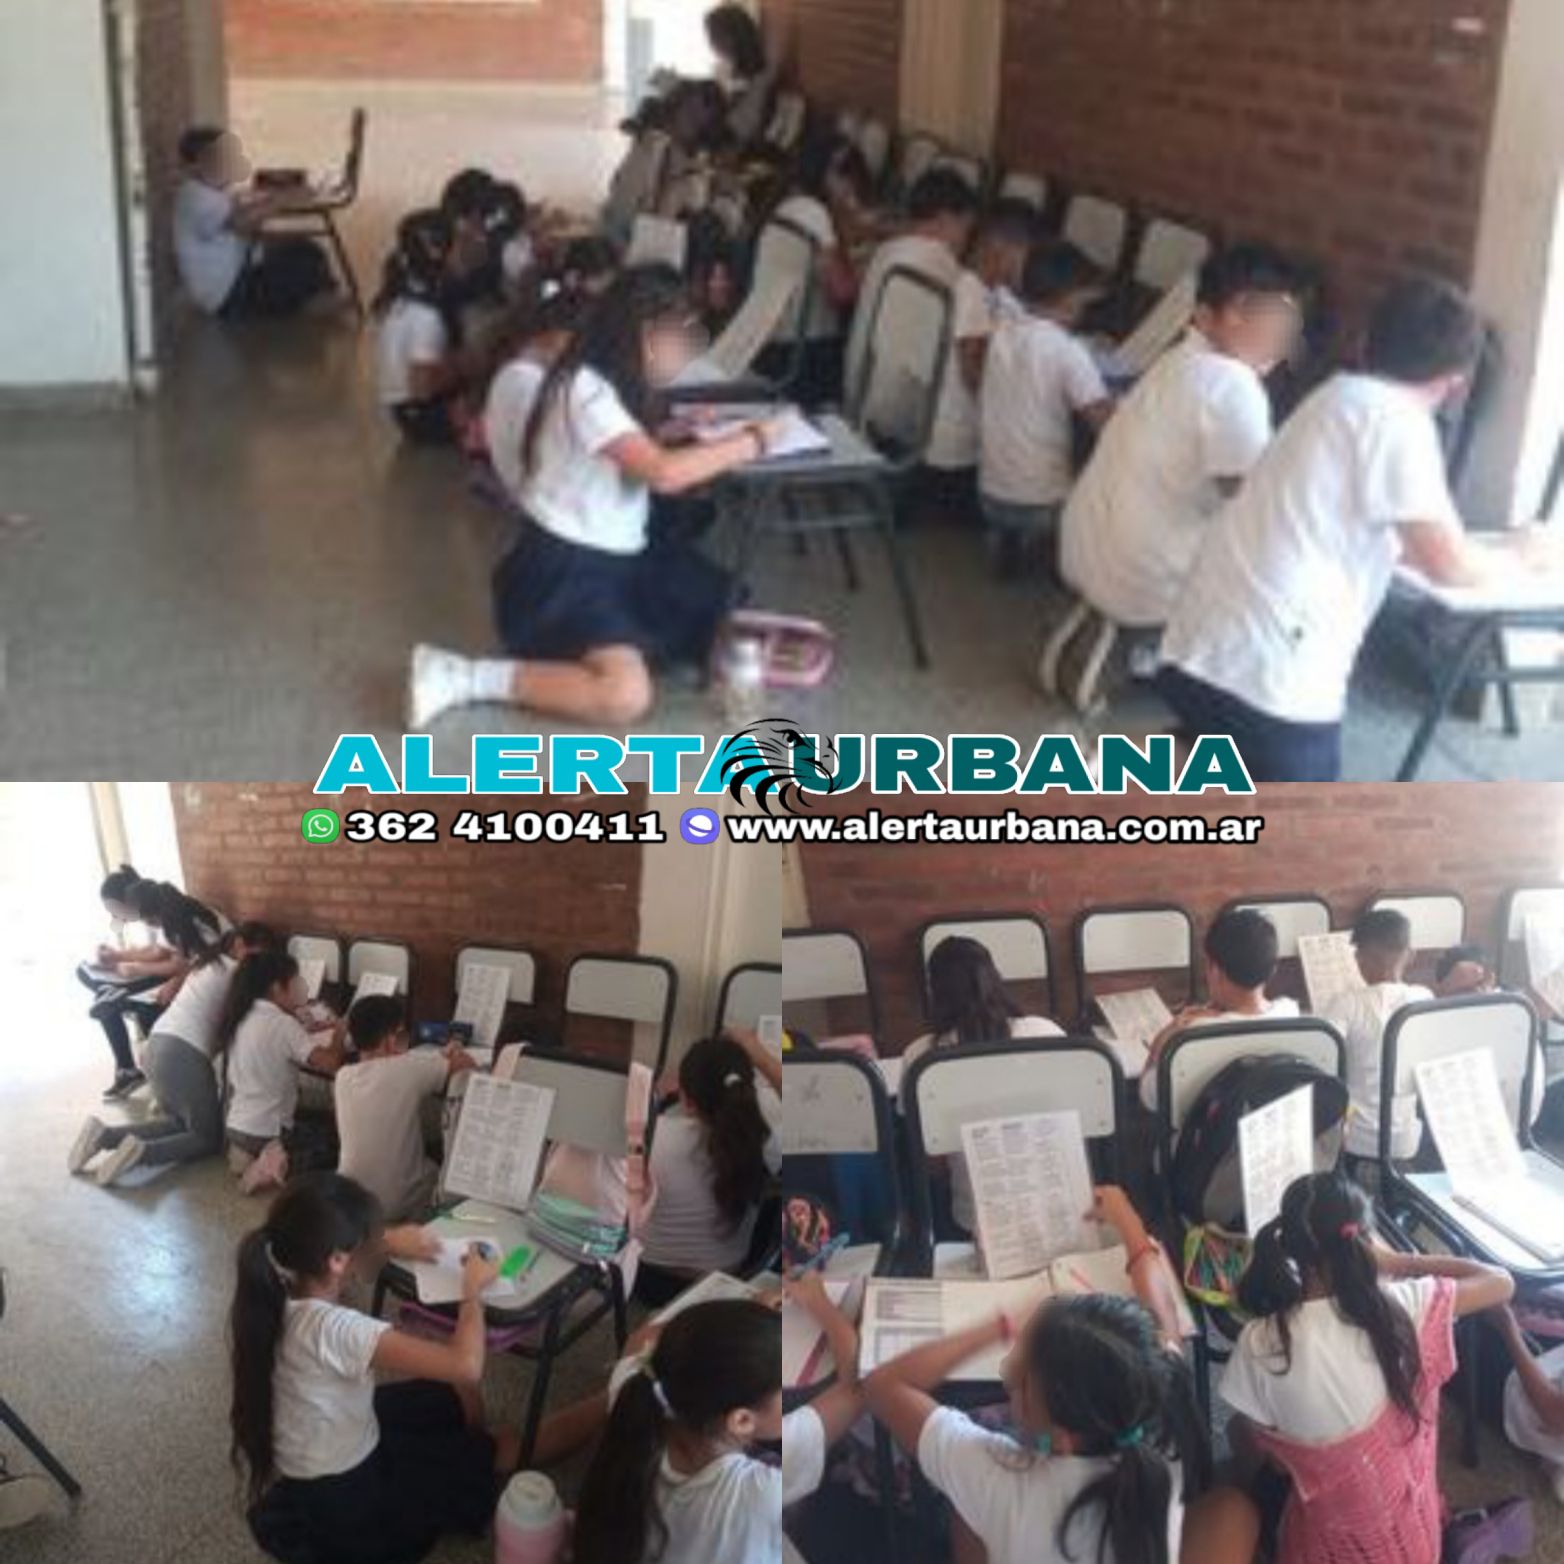 Barranqueras-Escuela N°1059: a estudiar en los pasillos, ¿por la falta de aire acondicionado?